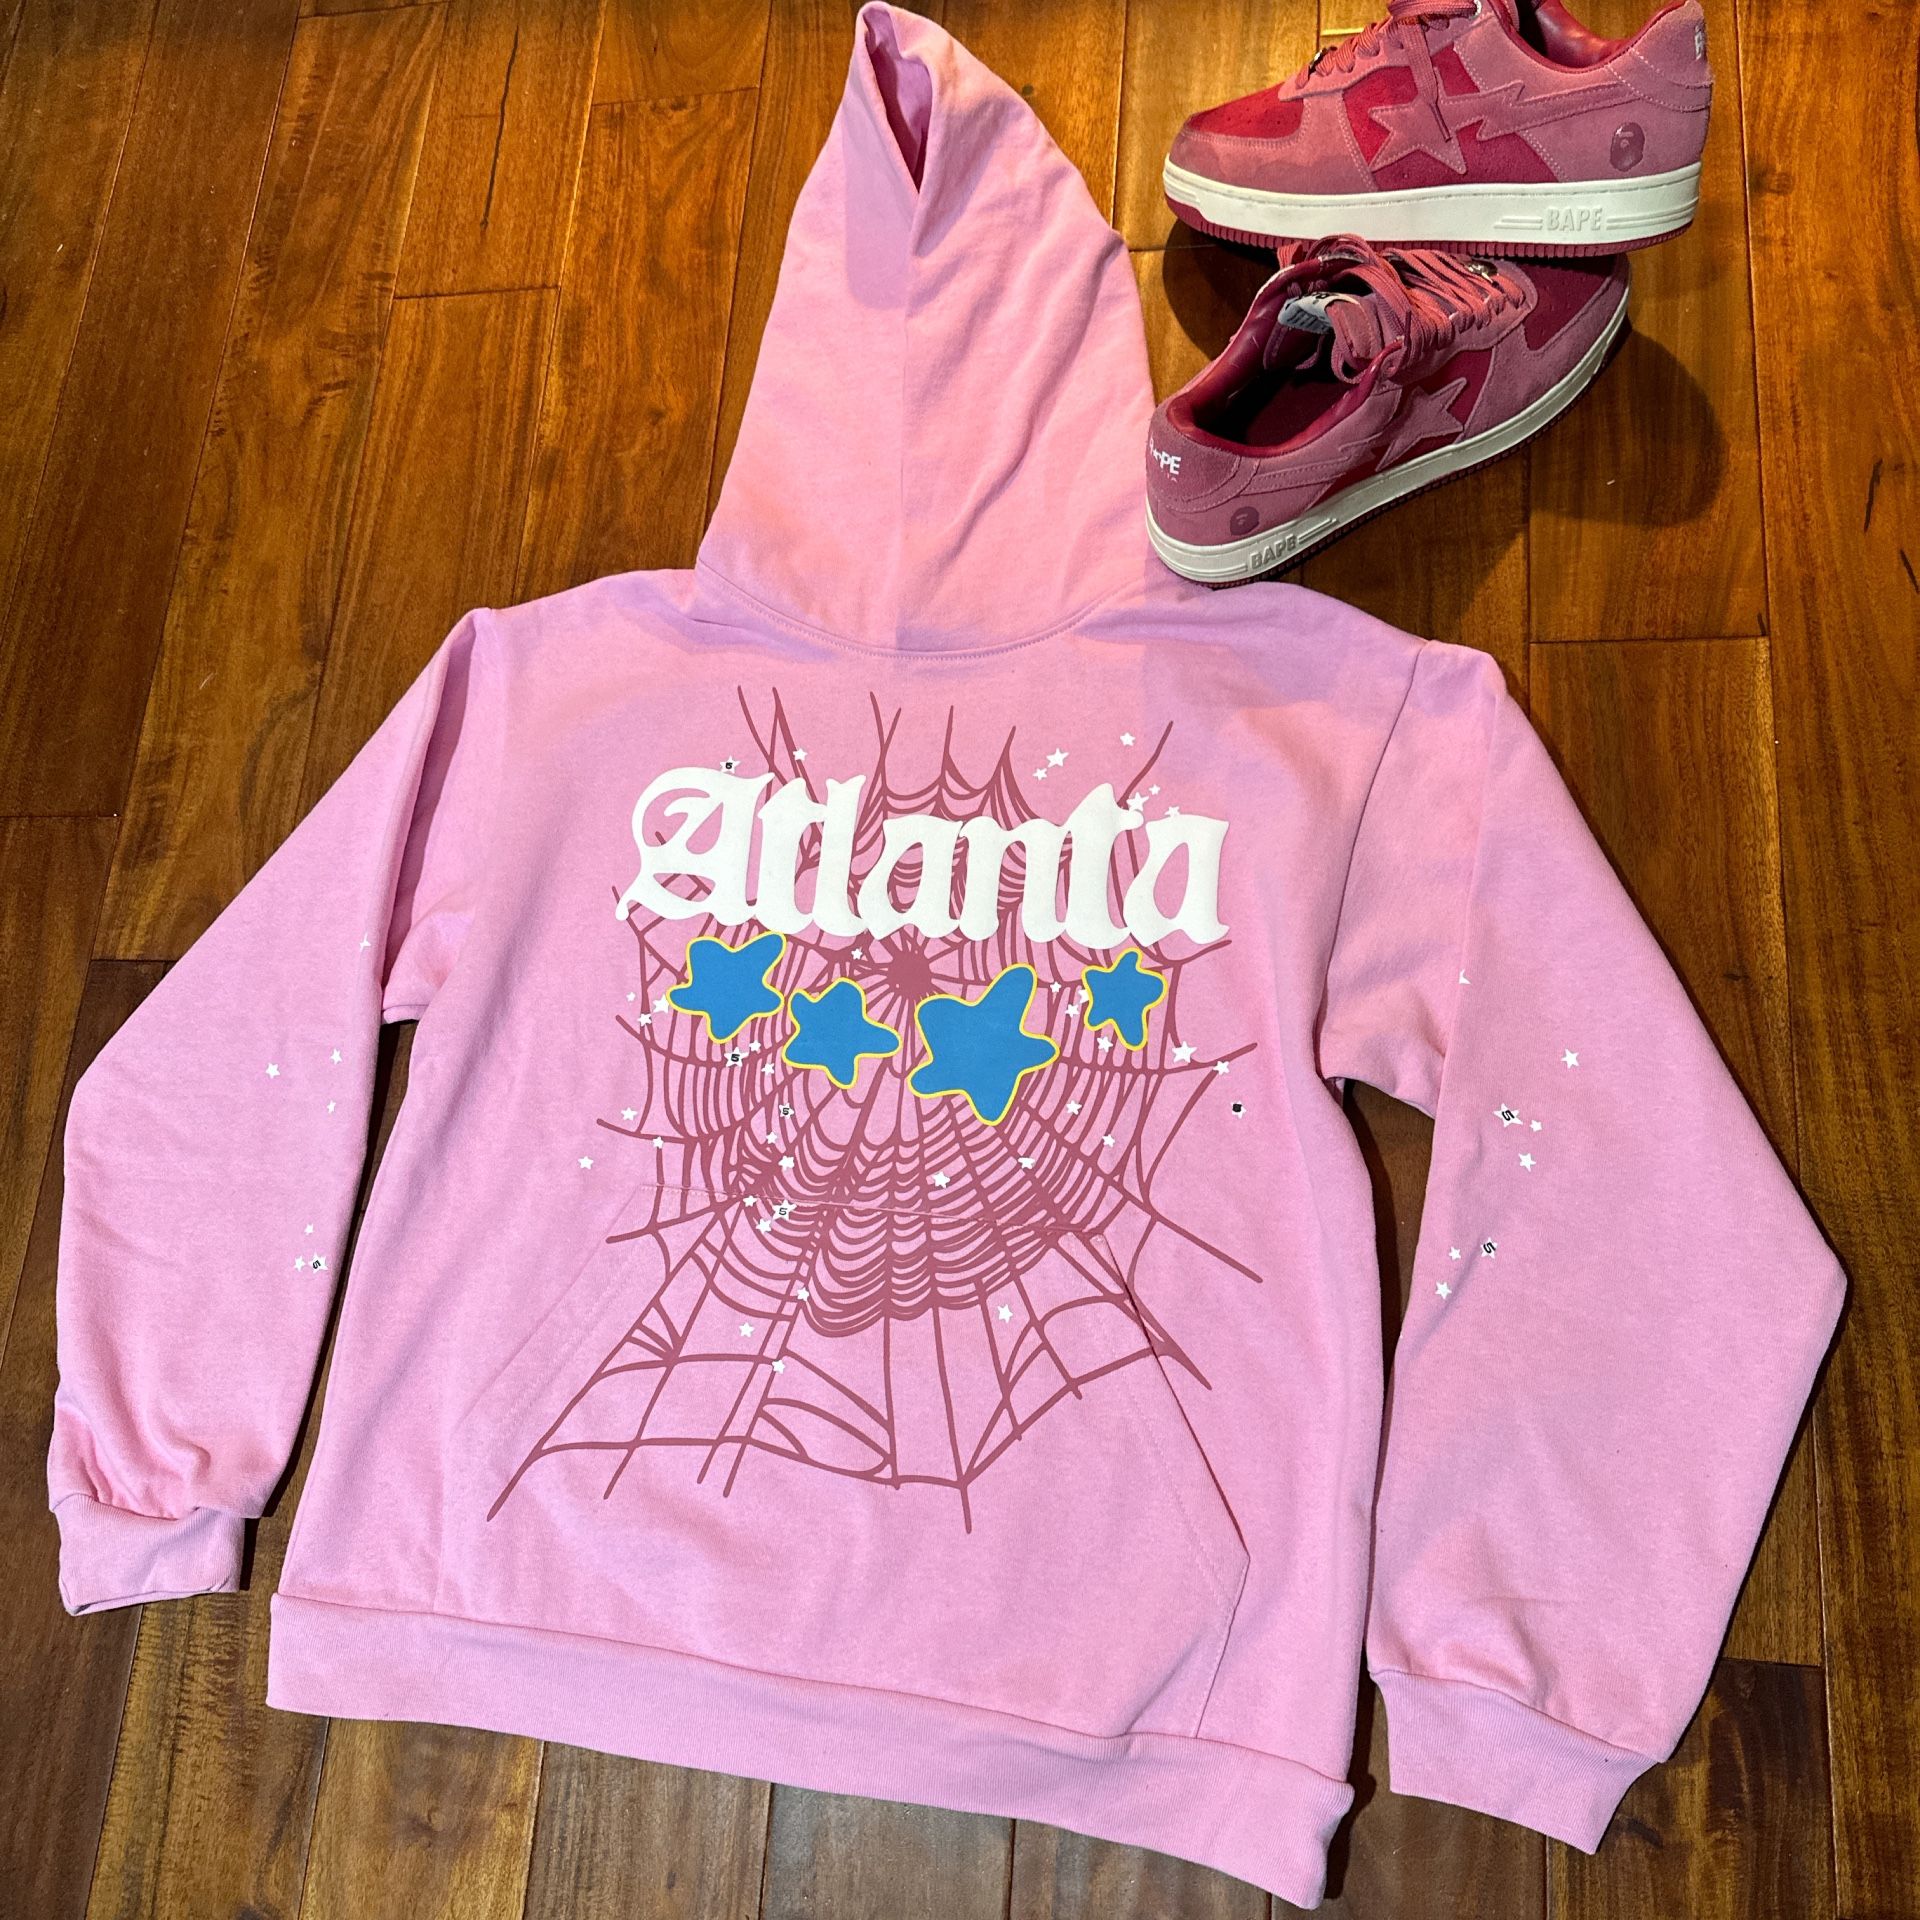 Sp5der Atlanta Hoodie (Pink)